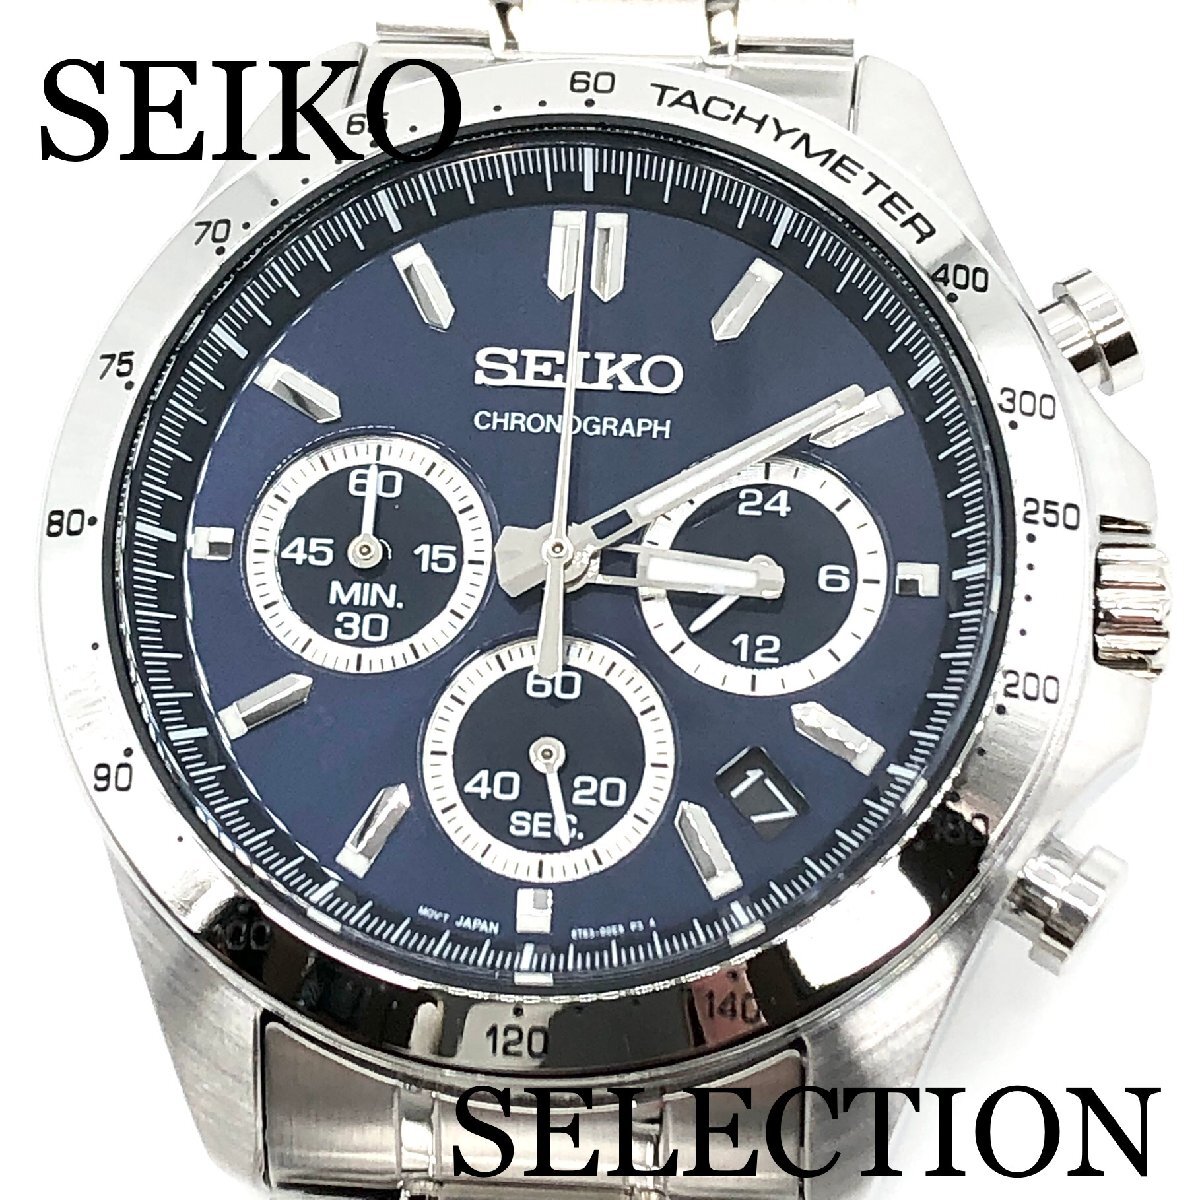 新品正規品『SEIKO SELECTION』セイコー セレクション クロノグラフ 腕時計 メンズ SBTR011【送料無料】_画像1